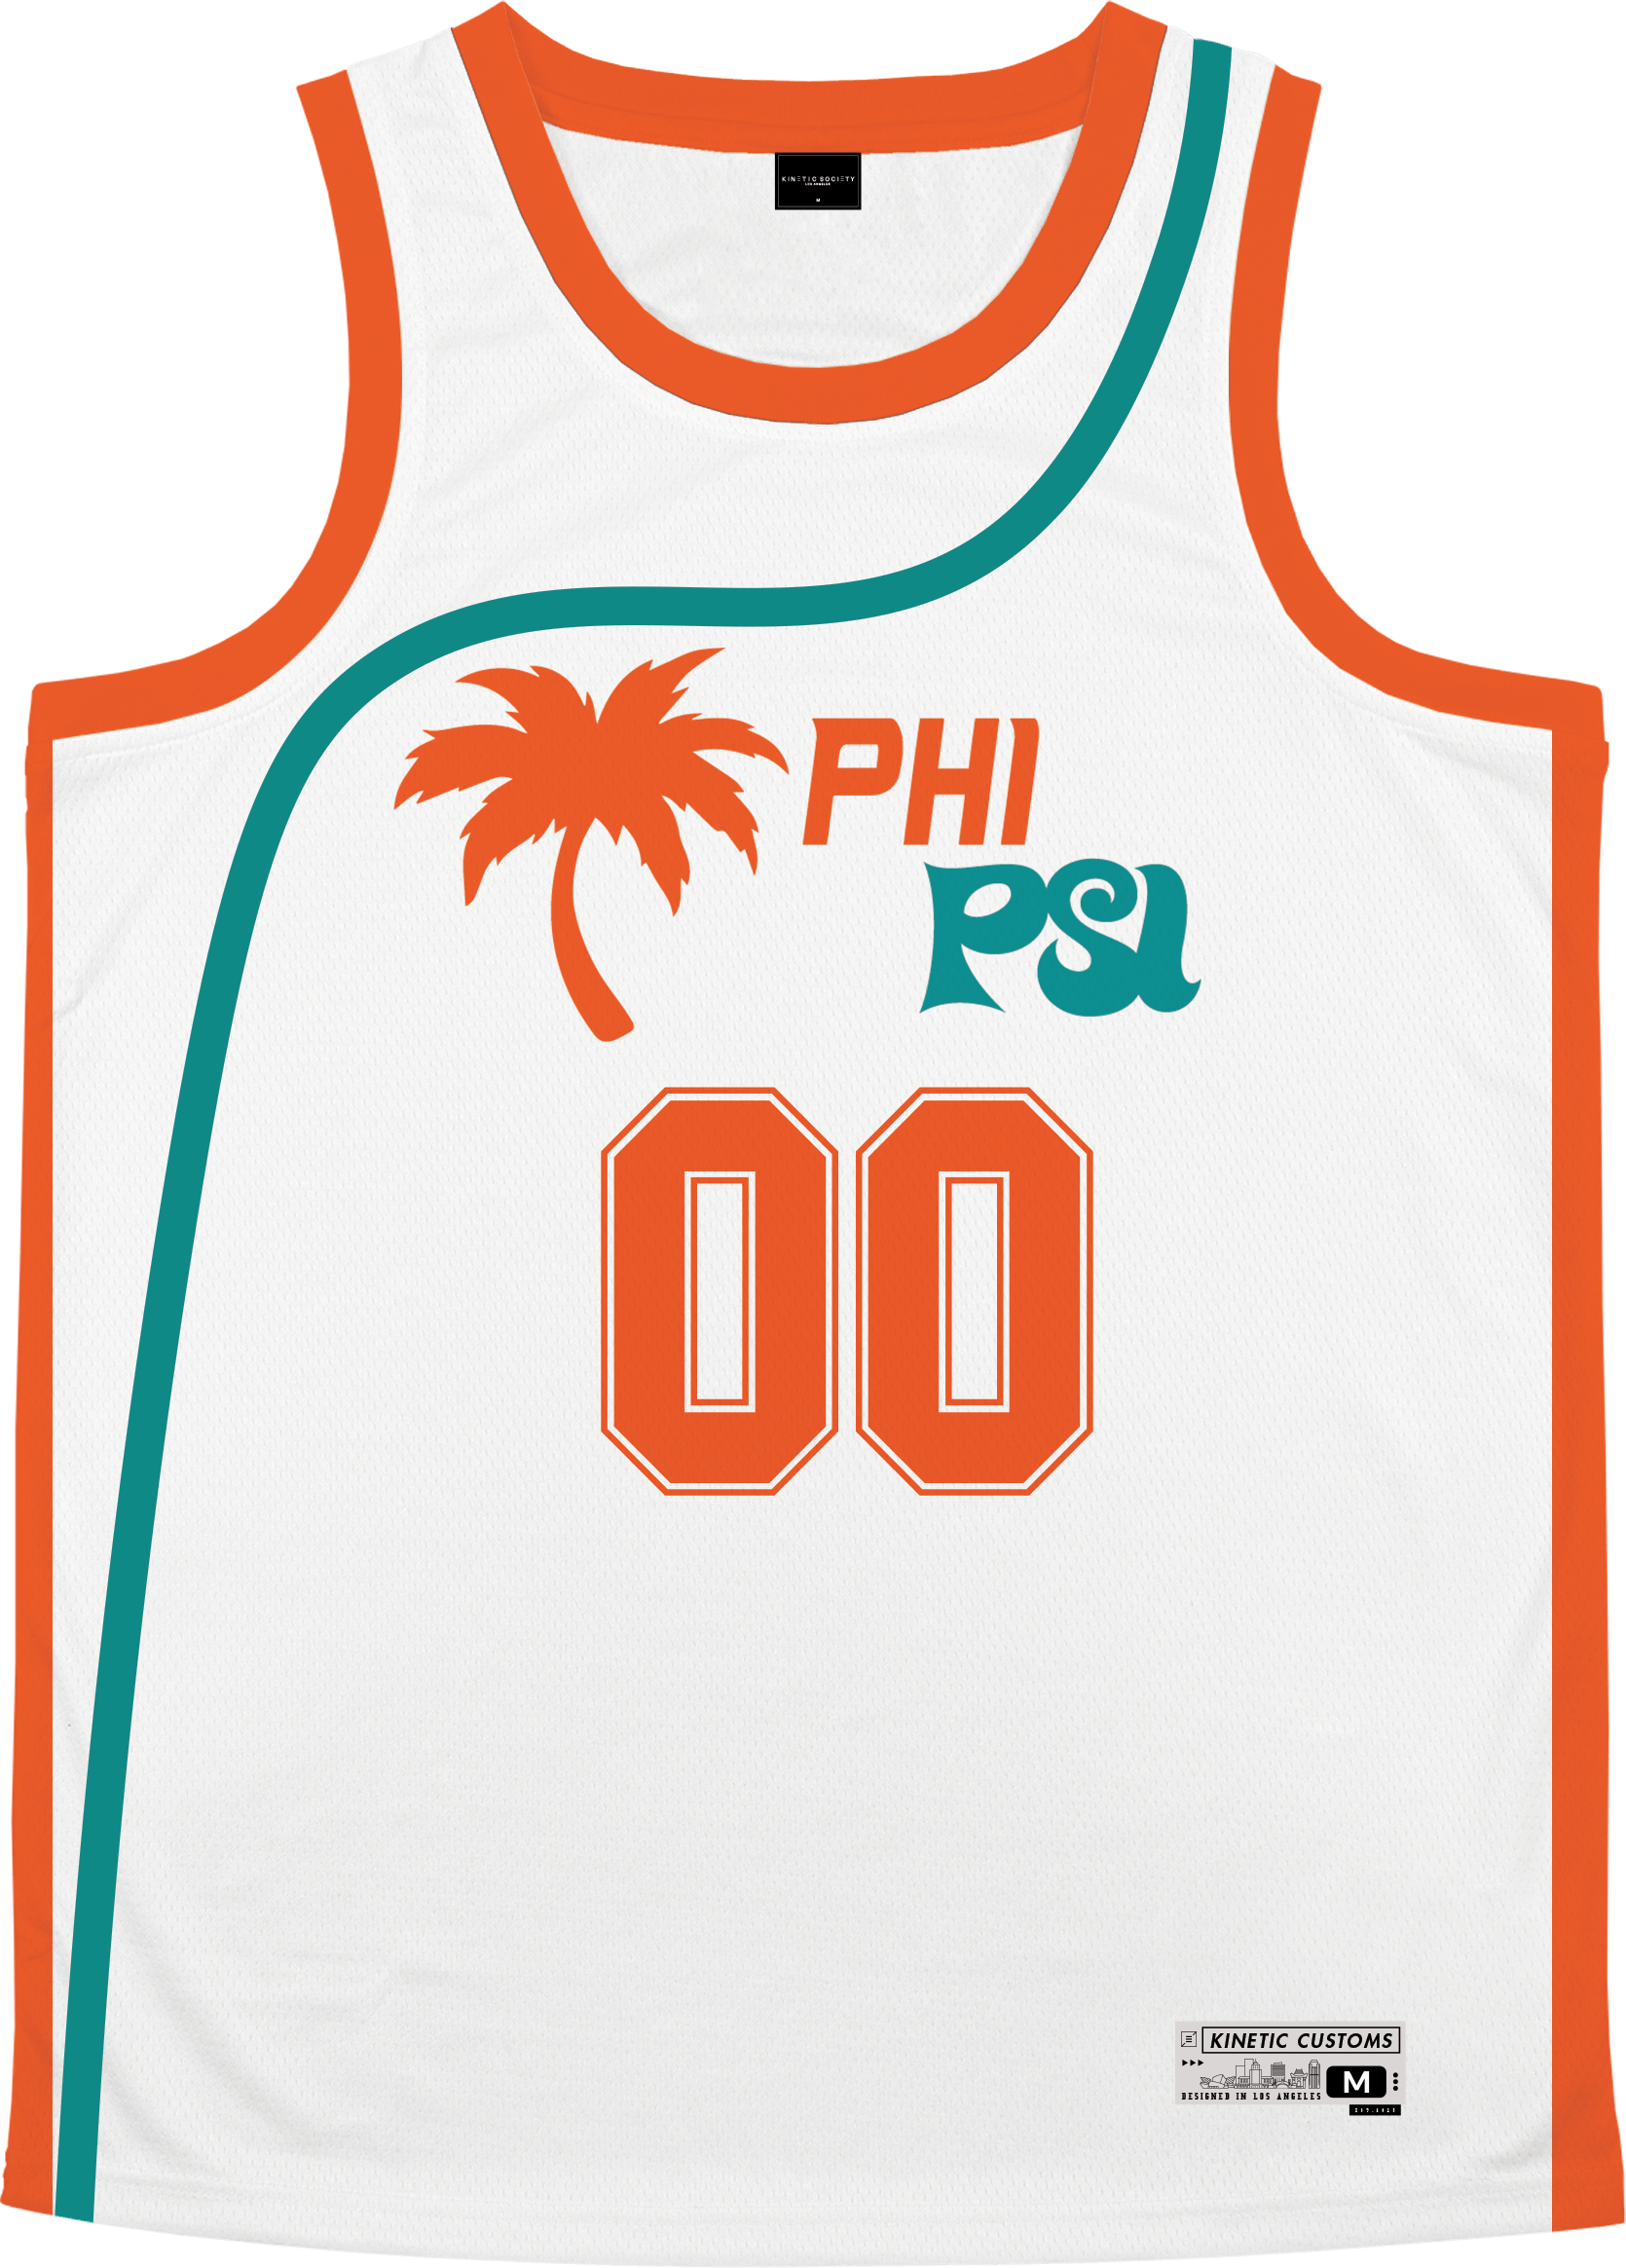 Phi Kappa Psi - Tropical Basketball Jersey Premium Basketball Kinetic Society LLC 